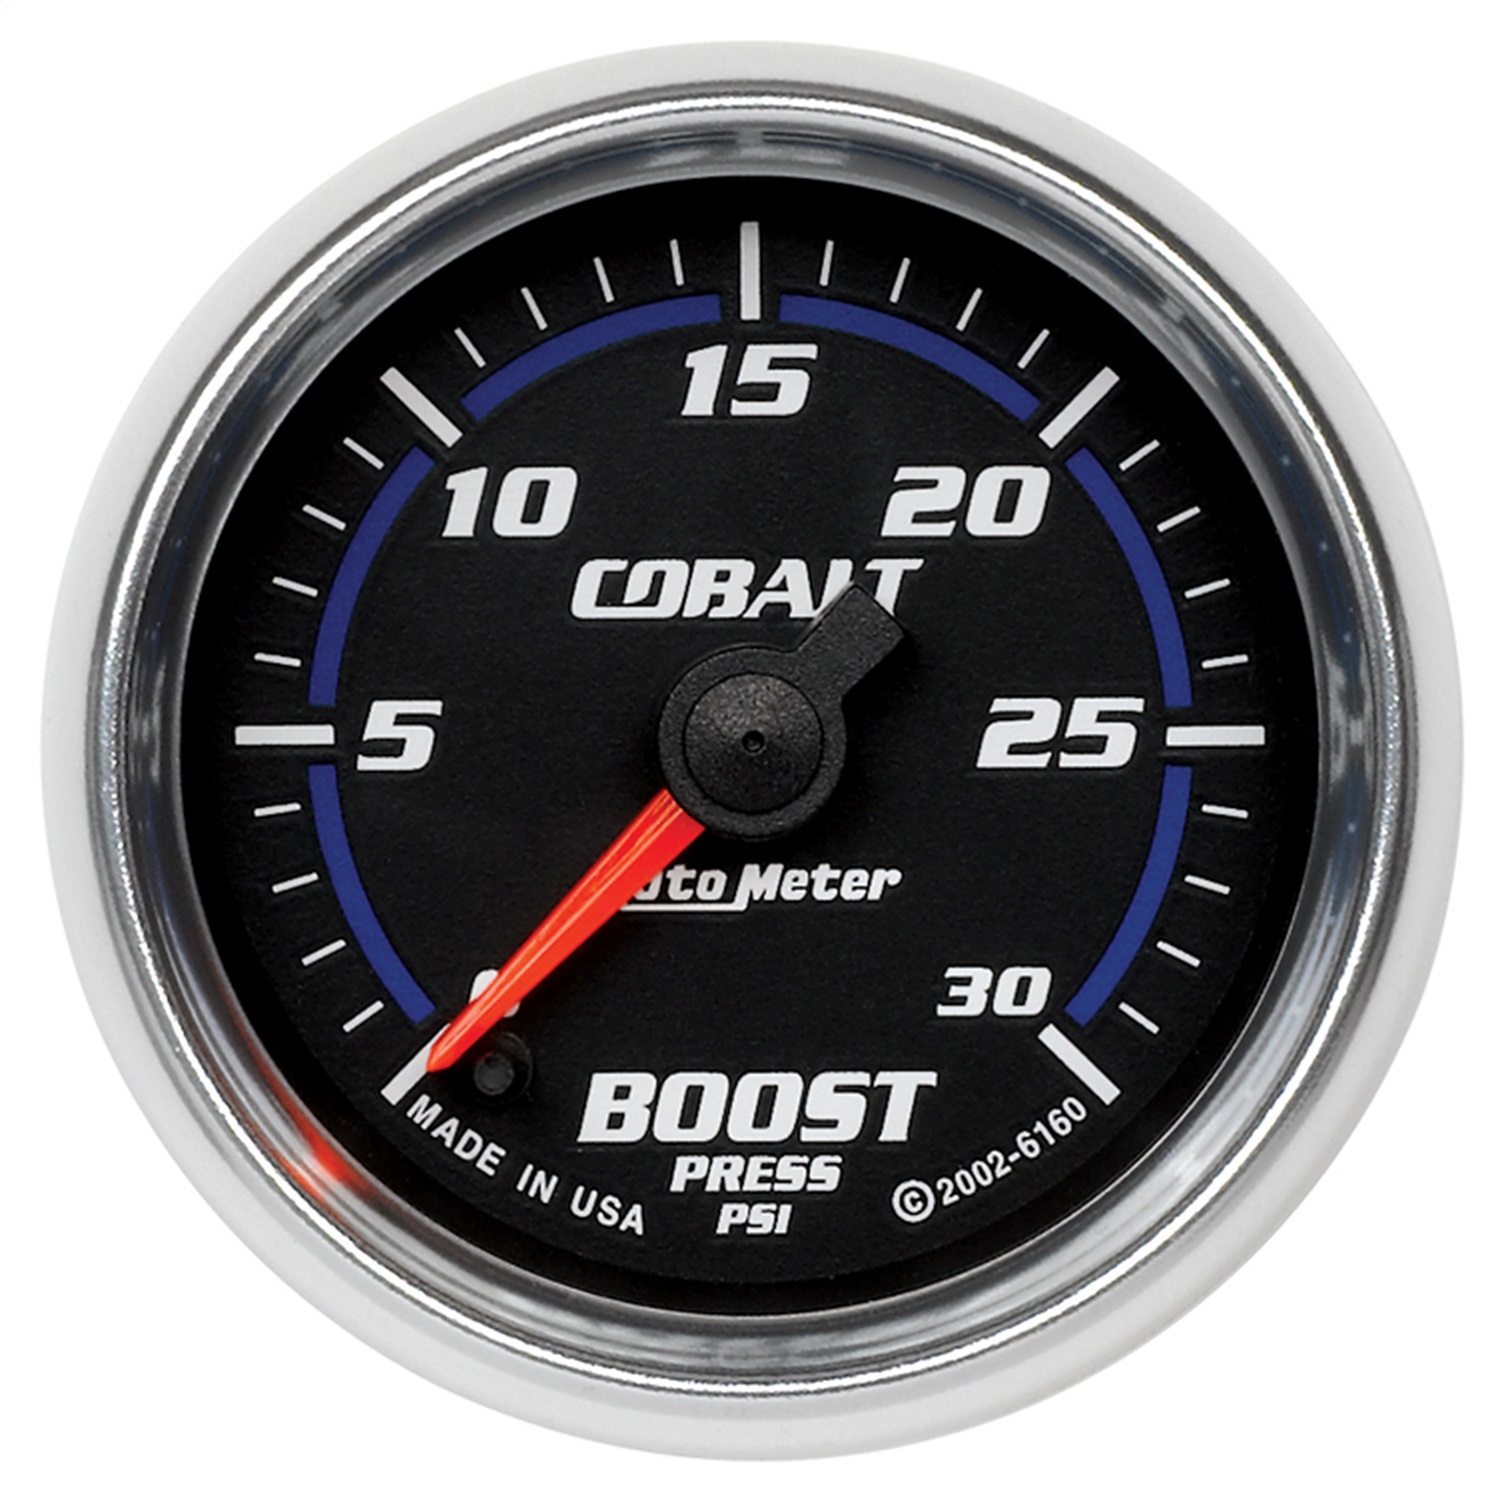 Auto Meter Auto Meter 6160 Cobalt; Electric Boost Gauge